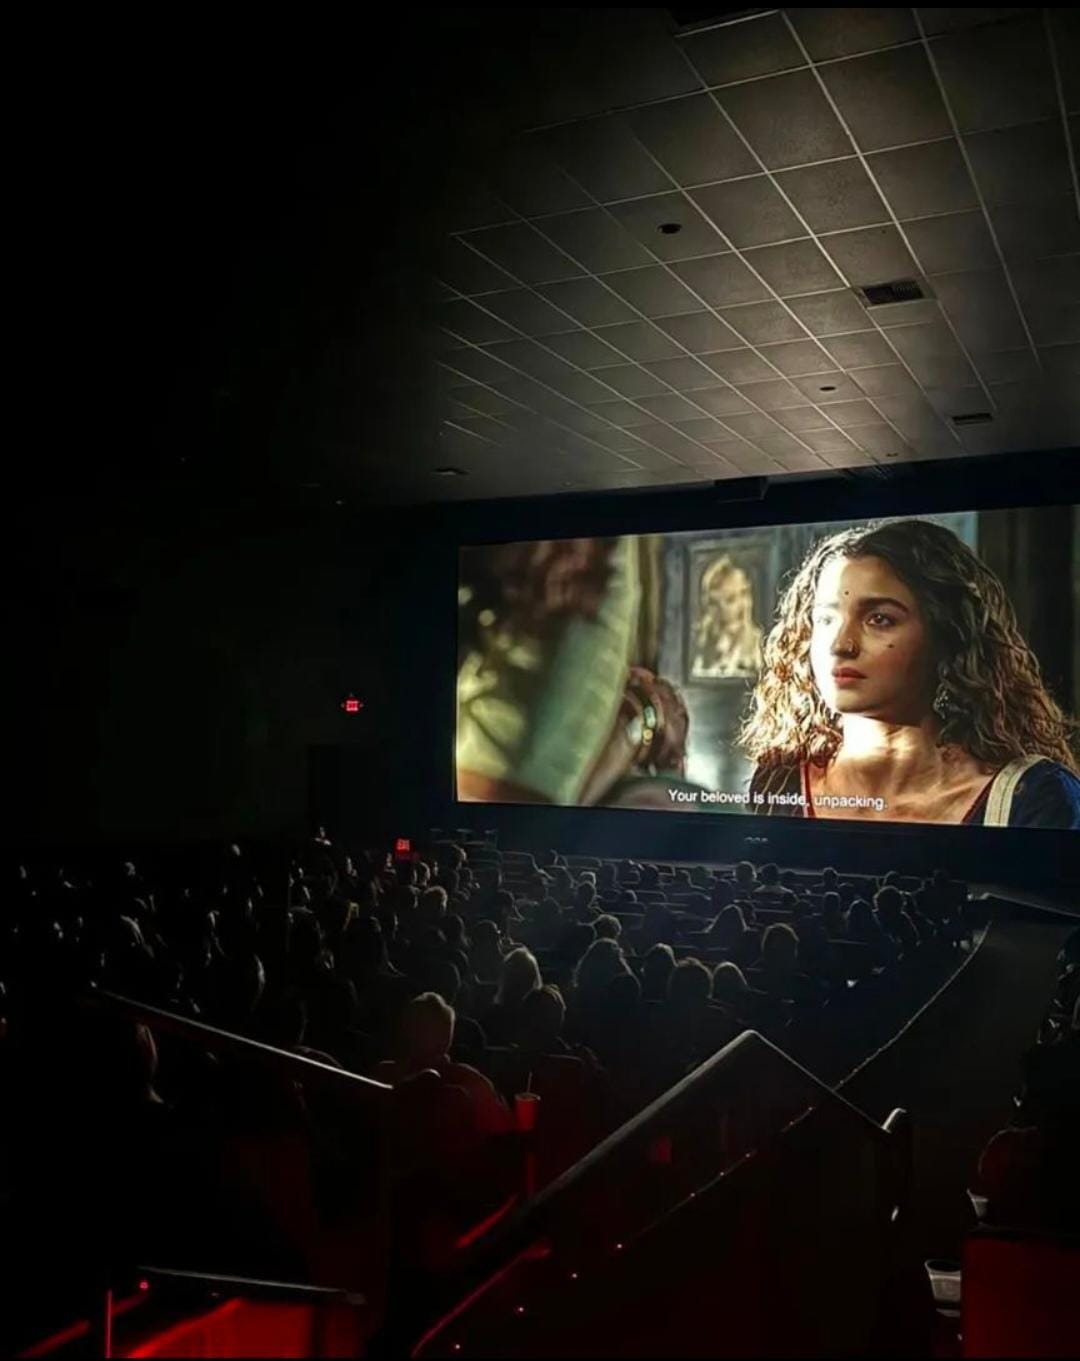 लॉस एंजेलिस के एयरो थिएटर में चला संजय लीला भंसाली की फिल्म "गंगुबाई काठियावाड़ी" का जादू, दर्शक हुए प्रभावित 45942